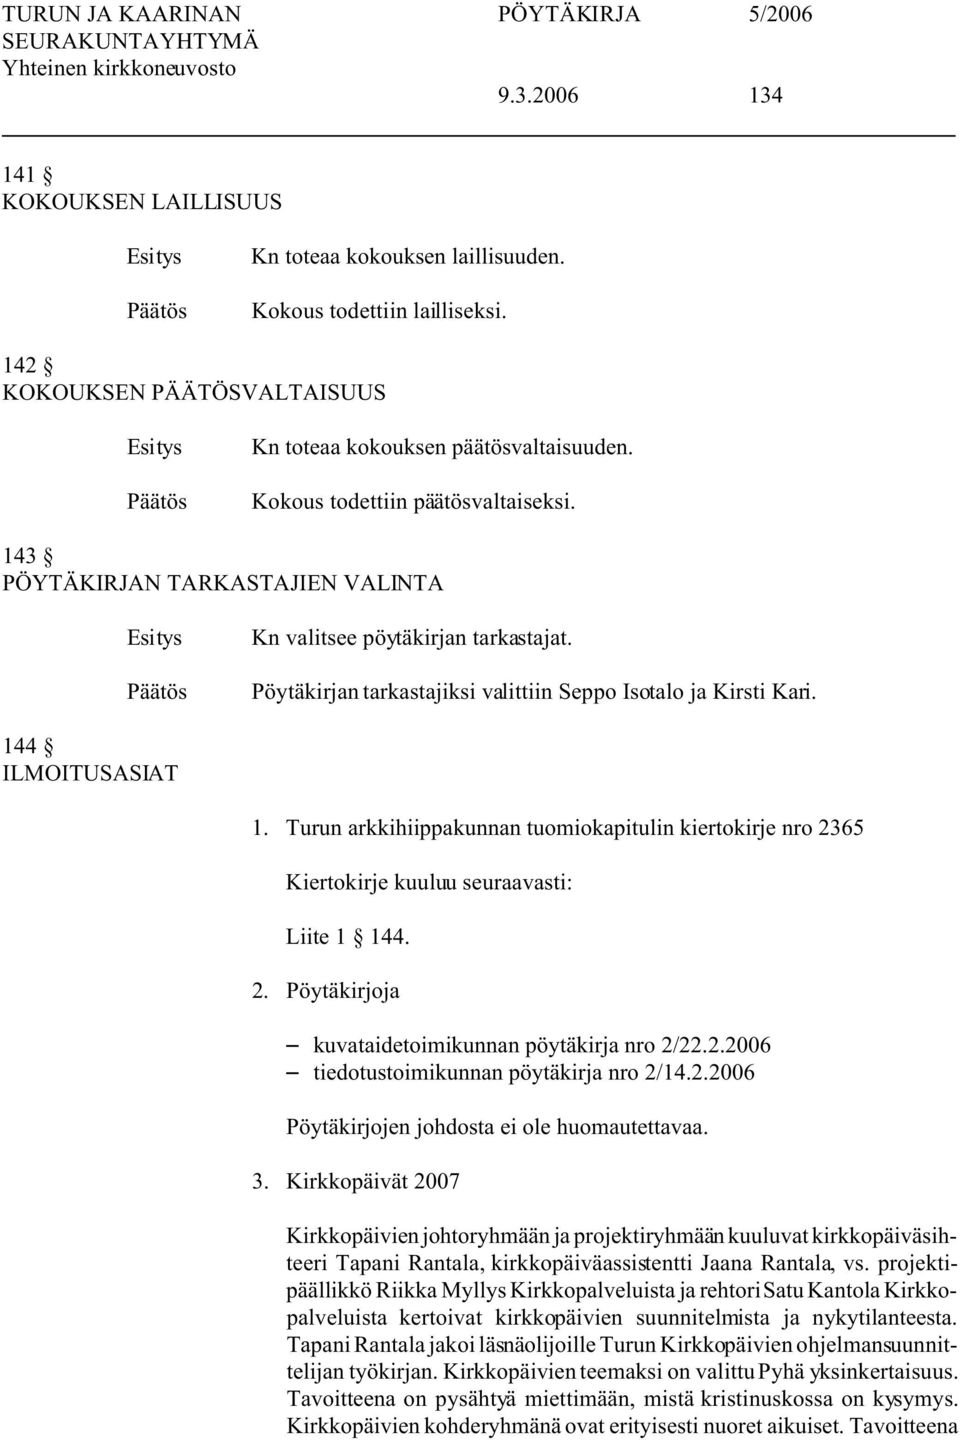 Turun arkkihiippakunnan tuomiokapitulin kiertokirje nro 2365 Kiertokirje kuuluu seuraavasti: Liite 1 144. 2. Pöytäkirjoja S kuvataidetoimikunnan pöytäkirja nro 2/22.2.2006 S tiedotustoimikunnan pöytäkirja nro 2/14.